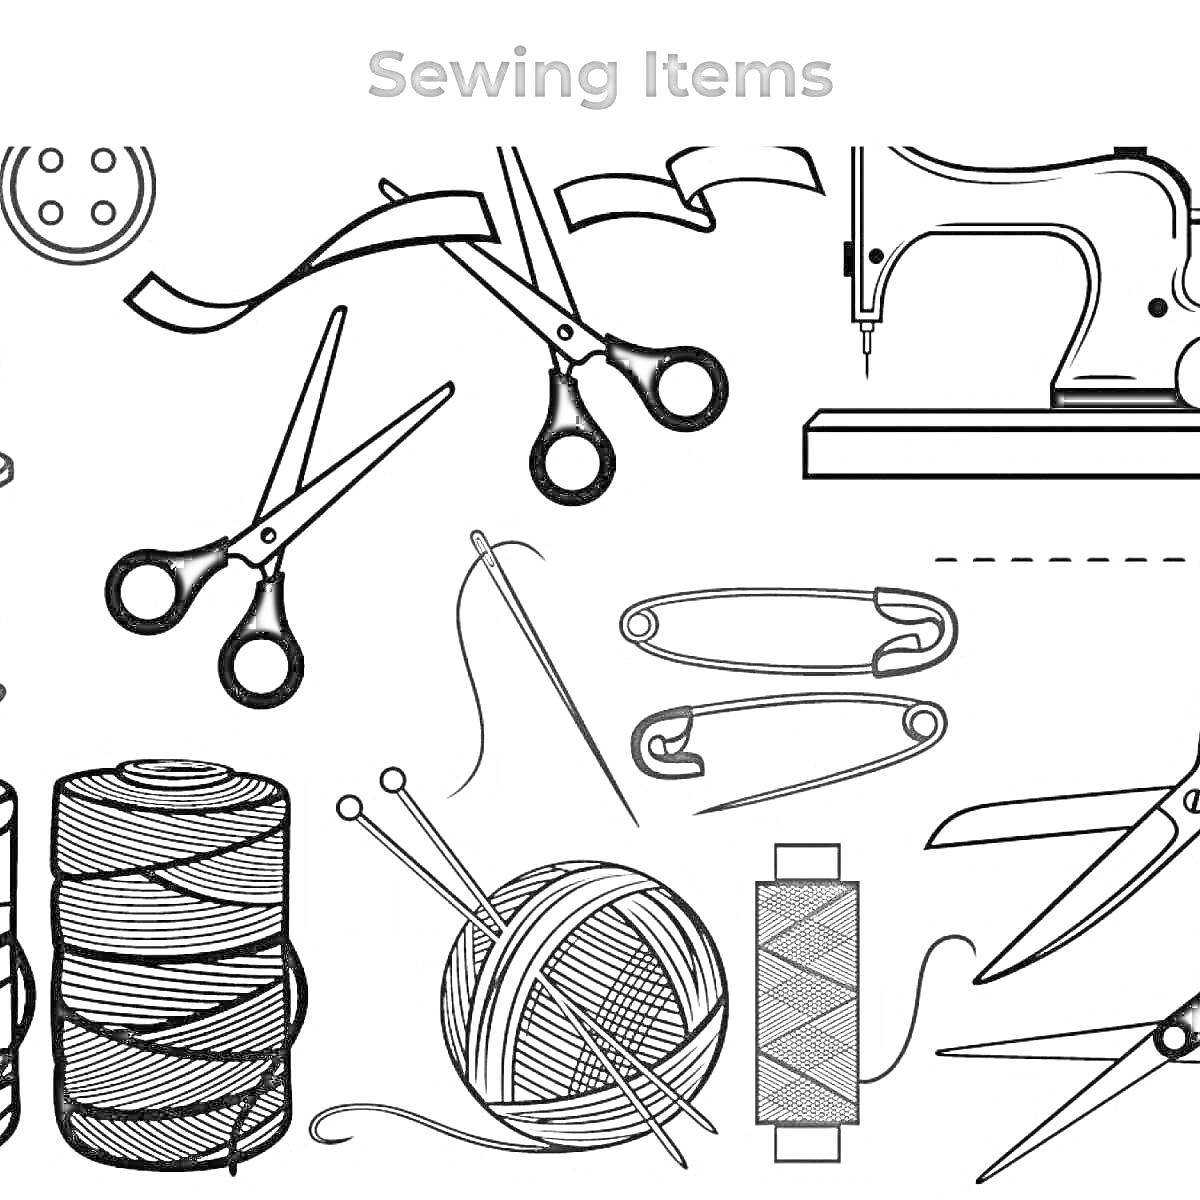 Раскраска Швейные предметы: пуговица, ножницы, иглы, швейная машинка, катушка с нитками, клубок пряжи, булавки, бобина с нитками